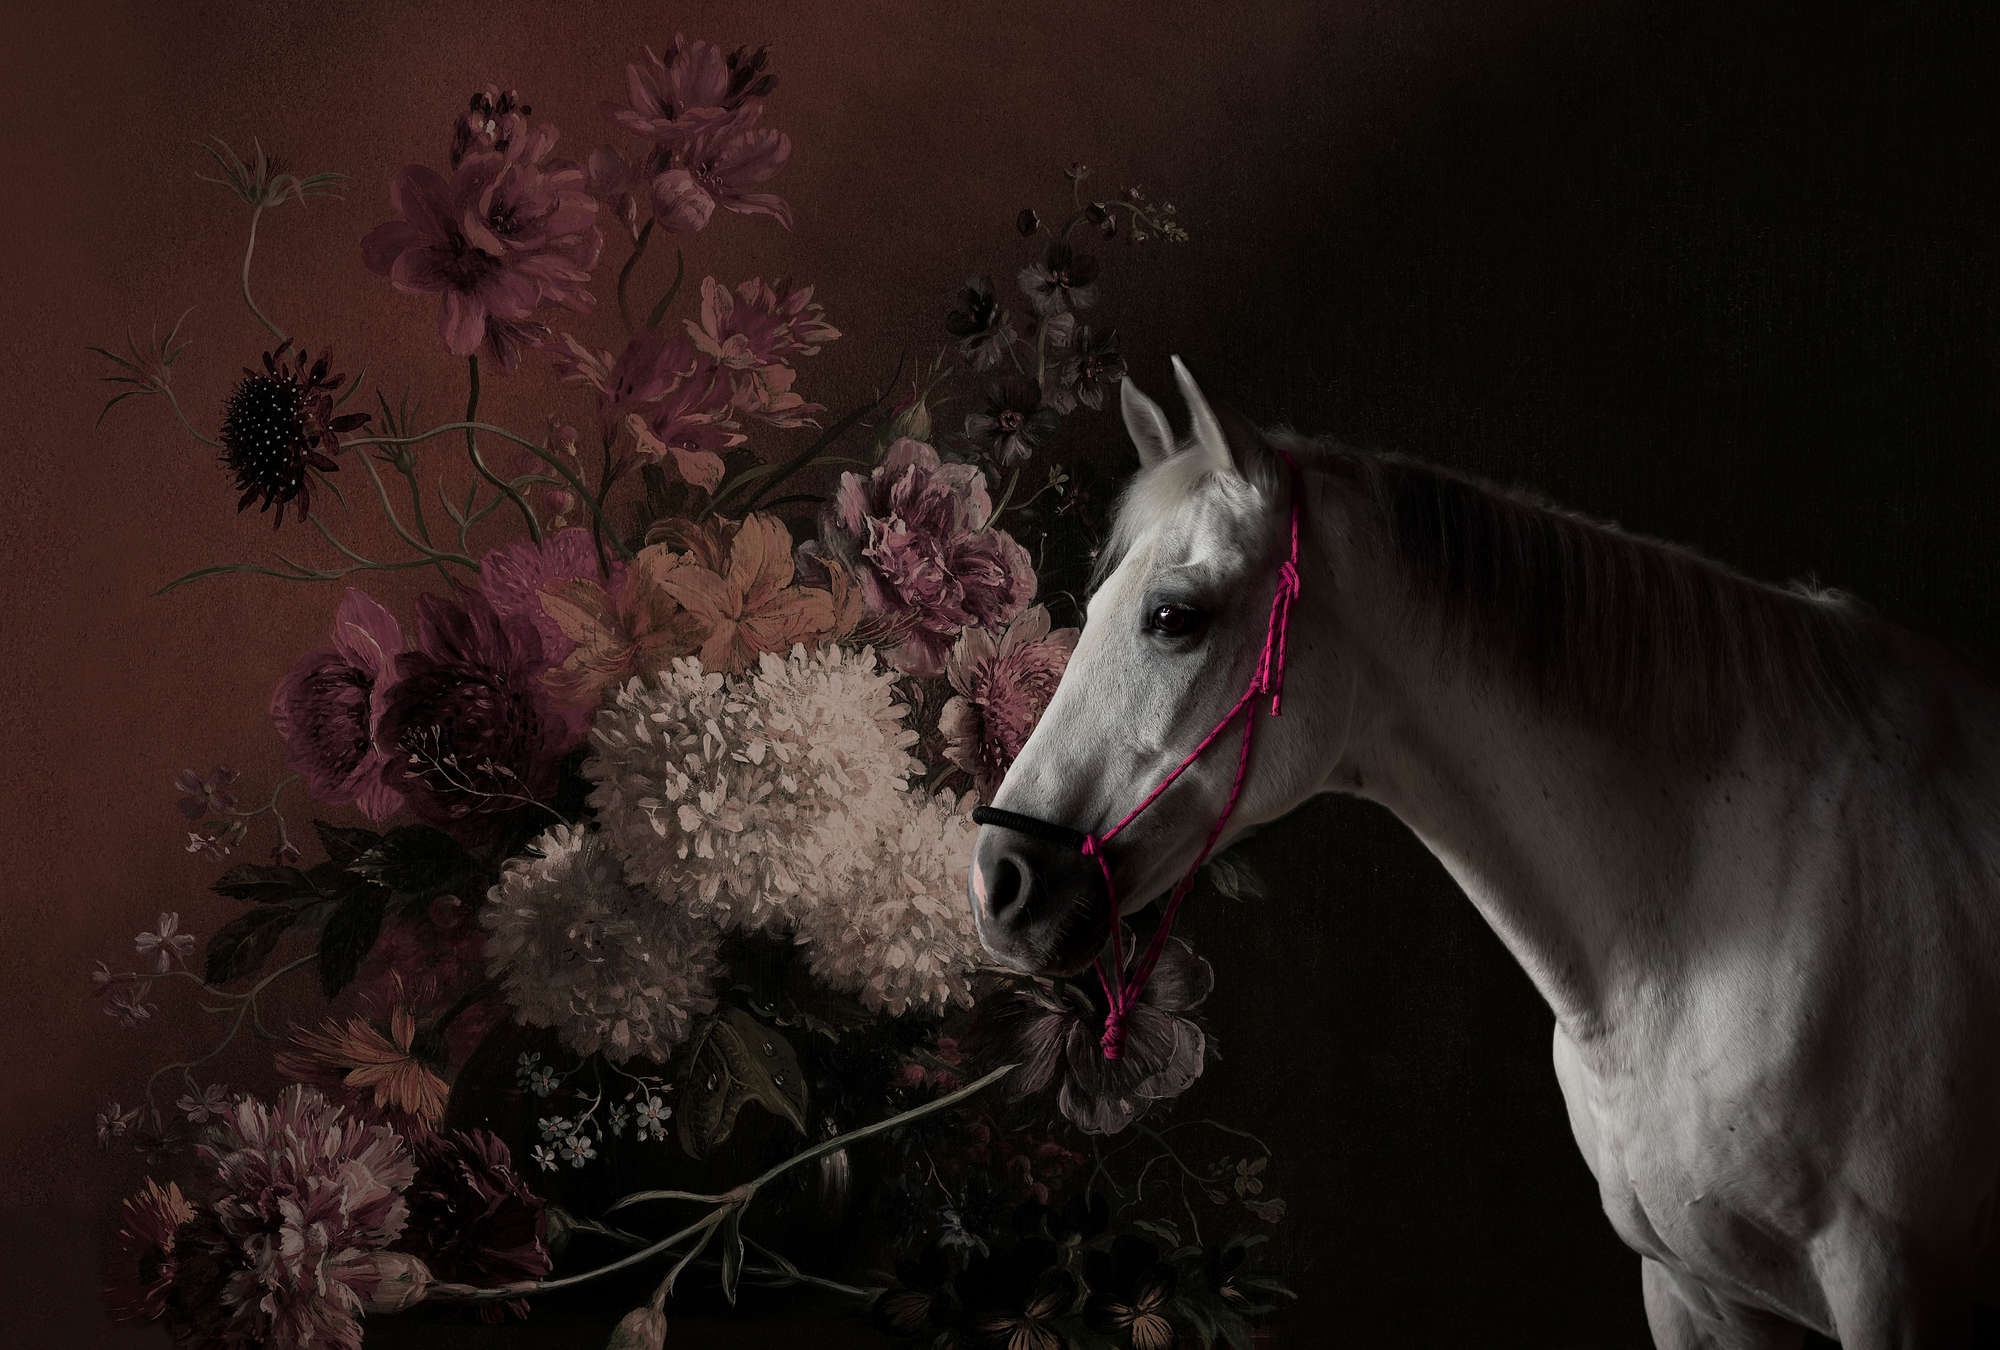             Fototapete Pferde Portrait mit Blumen – Walls by Patel
        